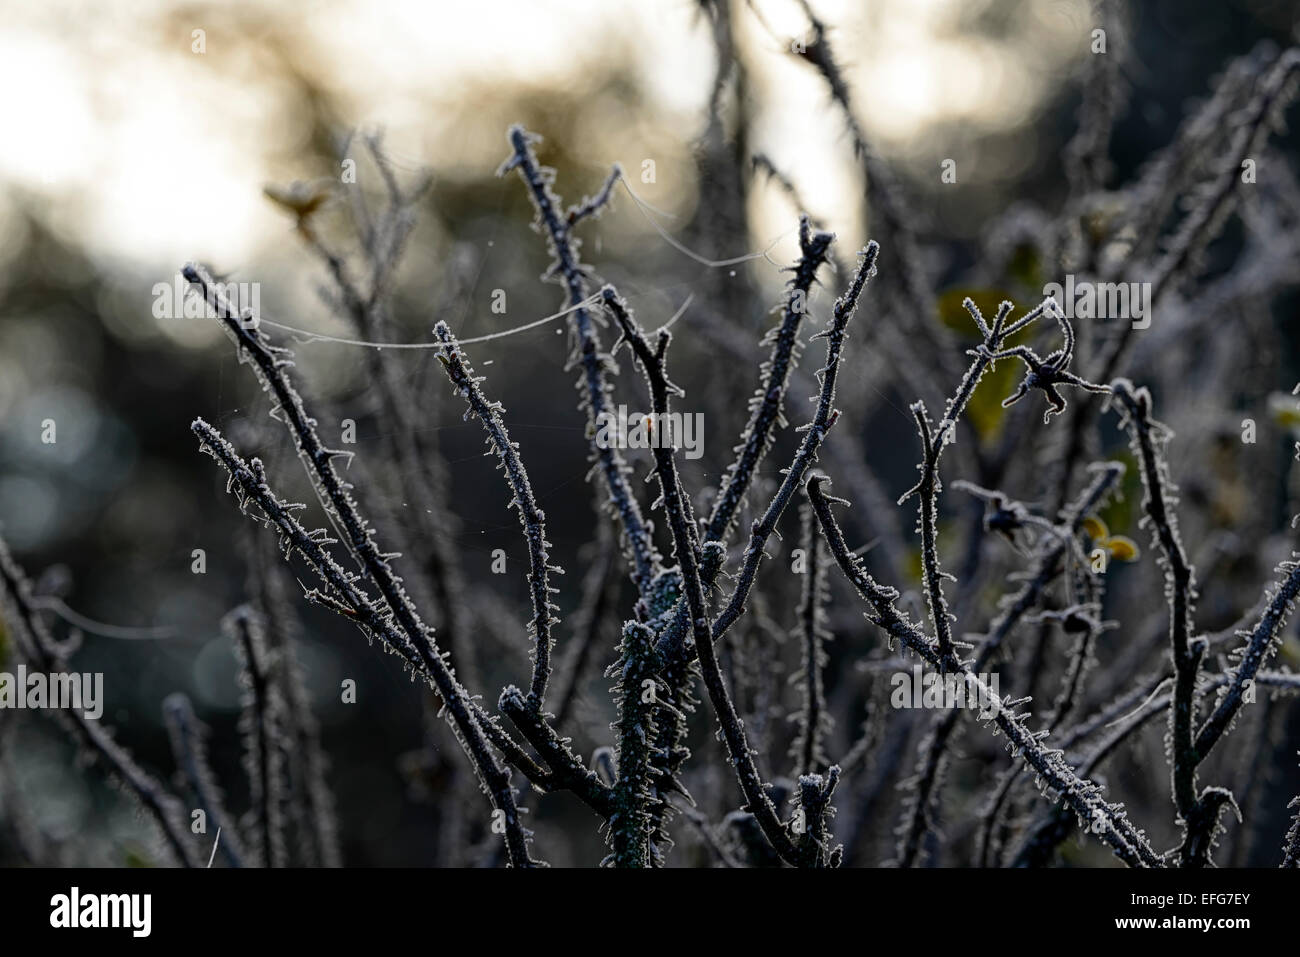 Frost-Abdeckung bedeckt frostigen Rosenstiele Dornen Garten Gartenarbeit  Spinnweben Winter gefrorene Einfrieren Silhouette RM Floral Silhouette  Stockfotografie - Alamy